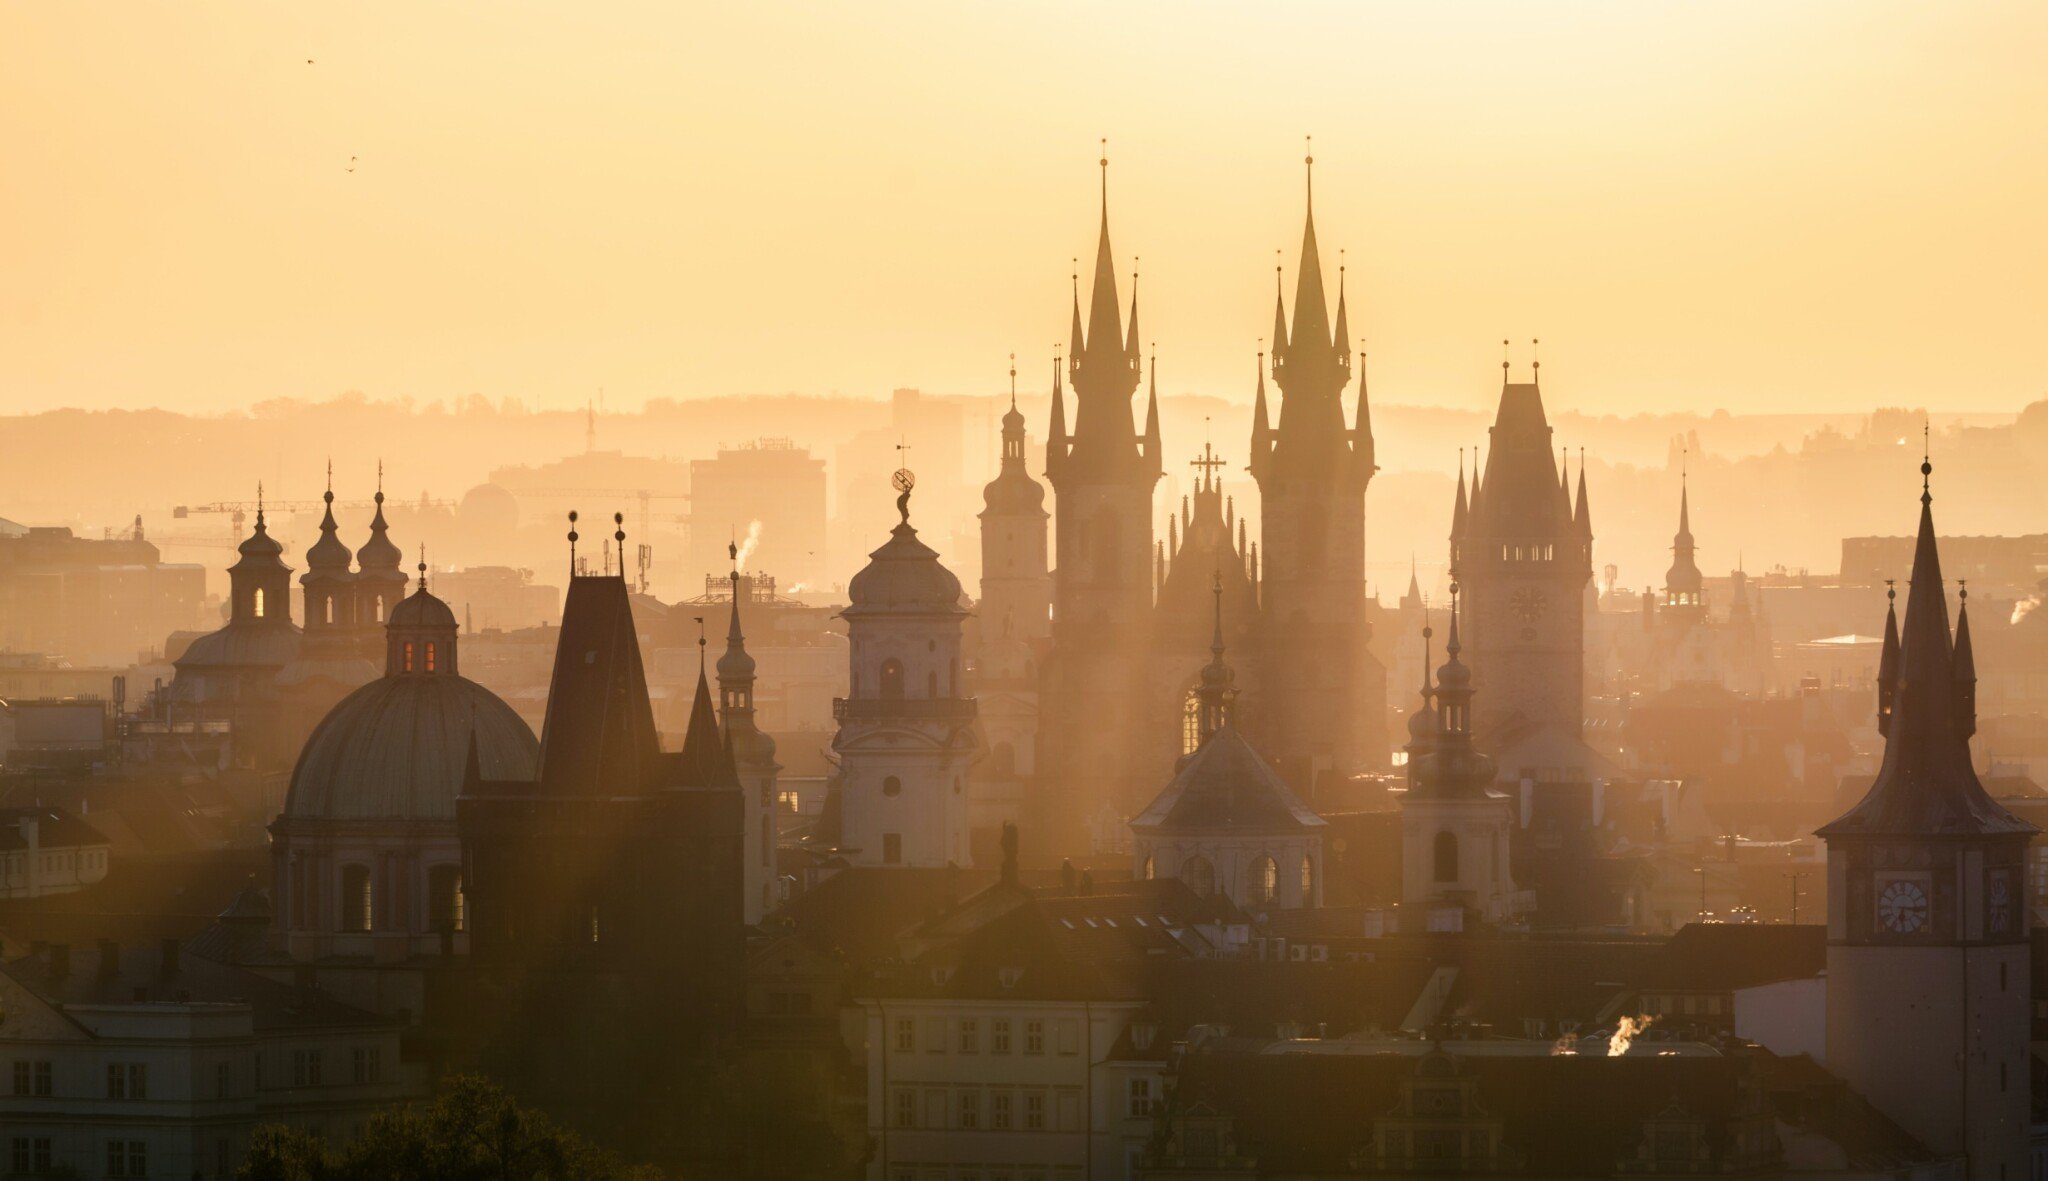 Praha plánuje stovky bytů. Kde všude chce konkurovat developerům?